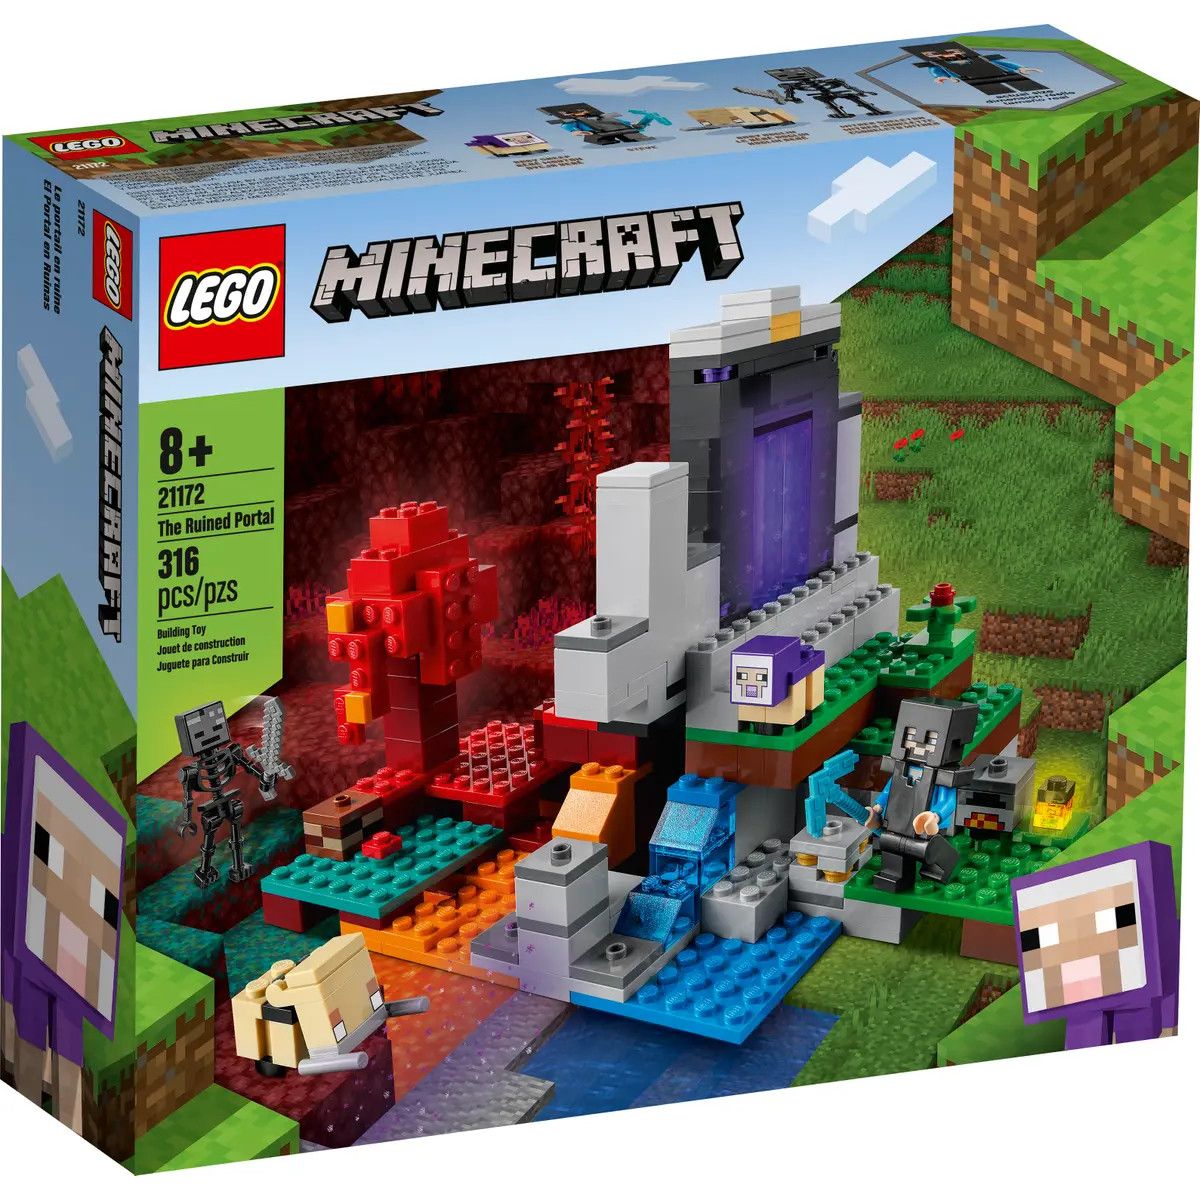 Klocki konstrukcyjne Lego Minecraft zniszczony portal (21172)